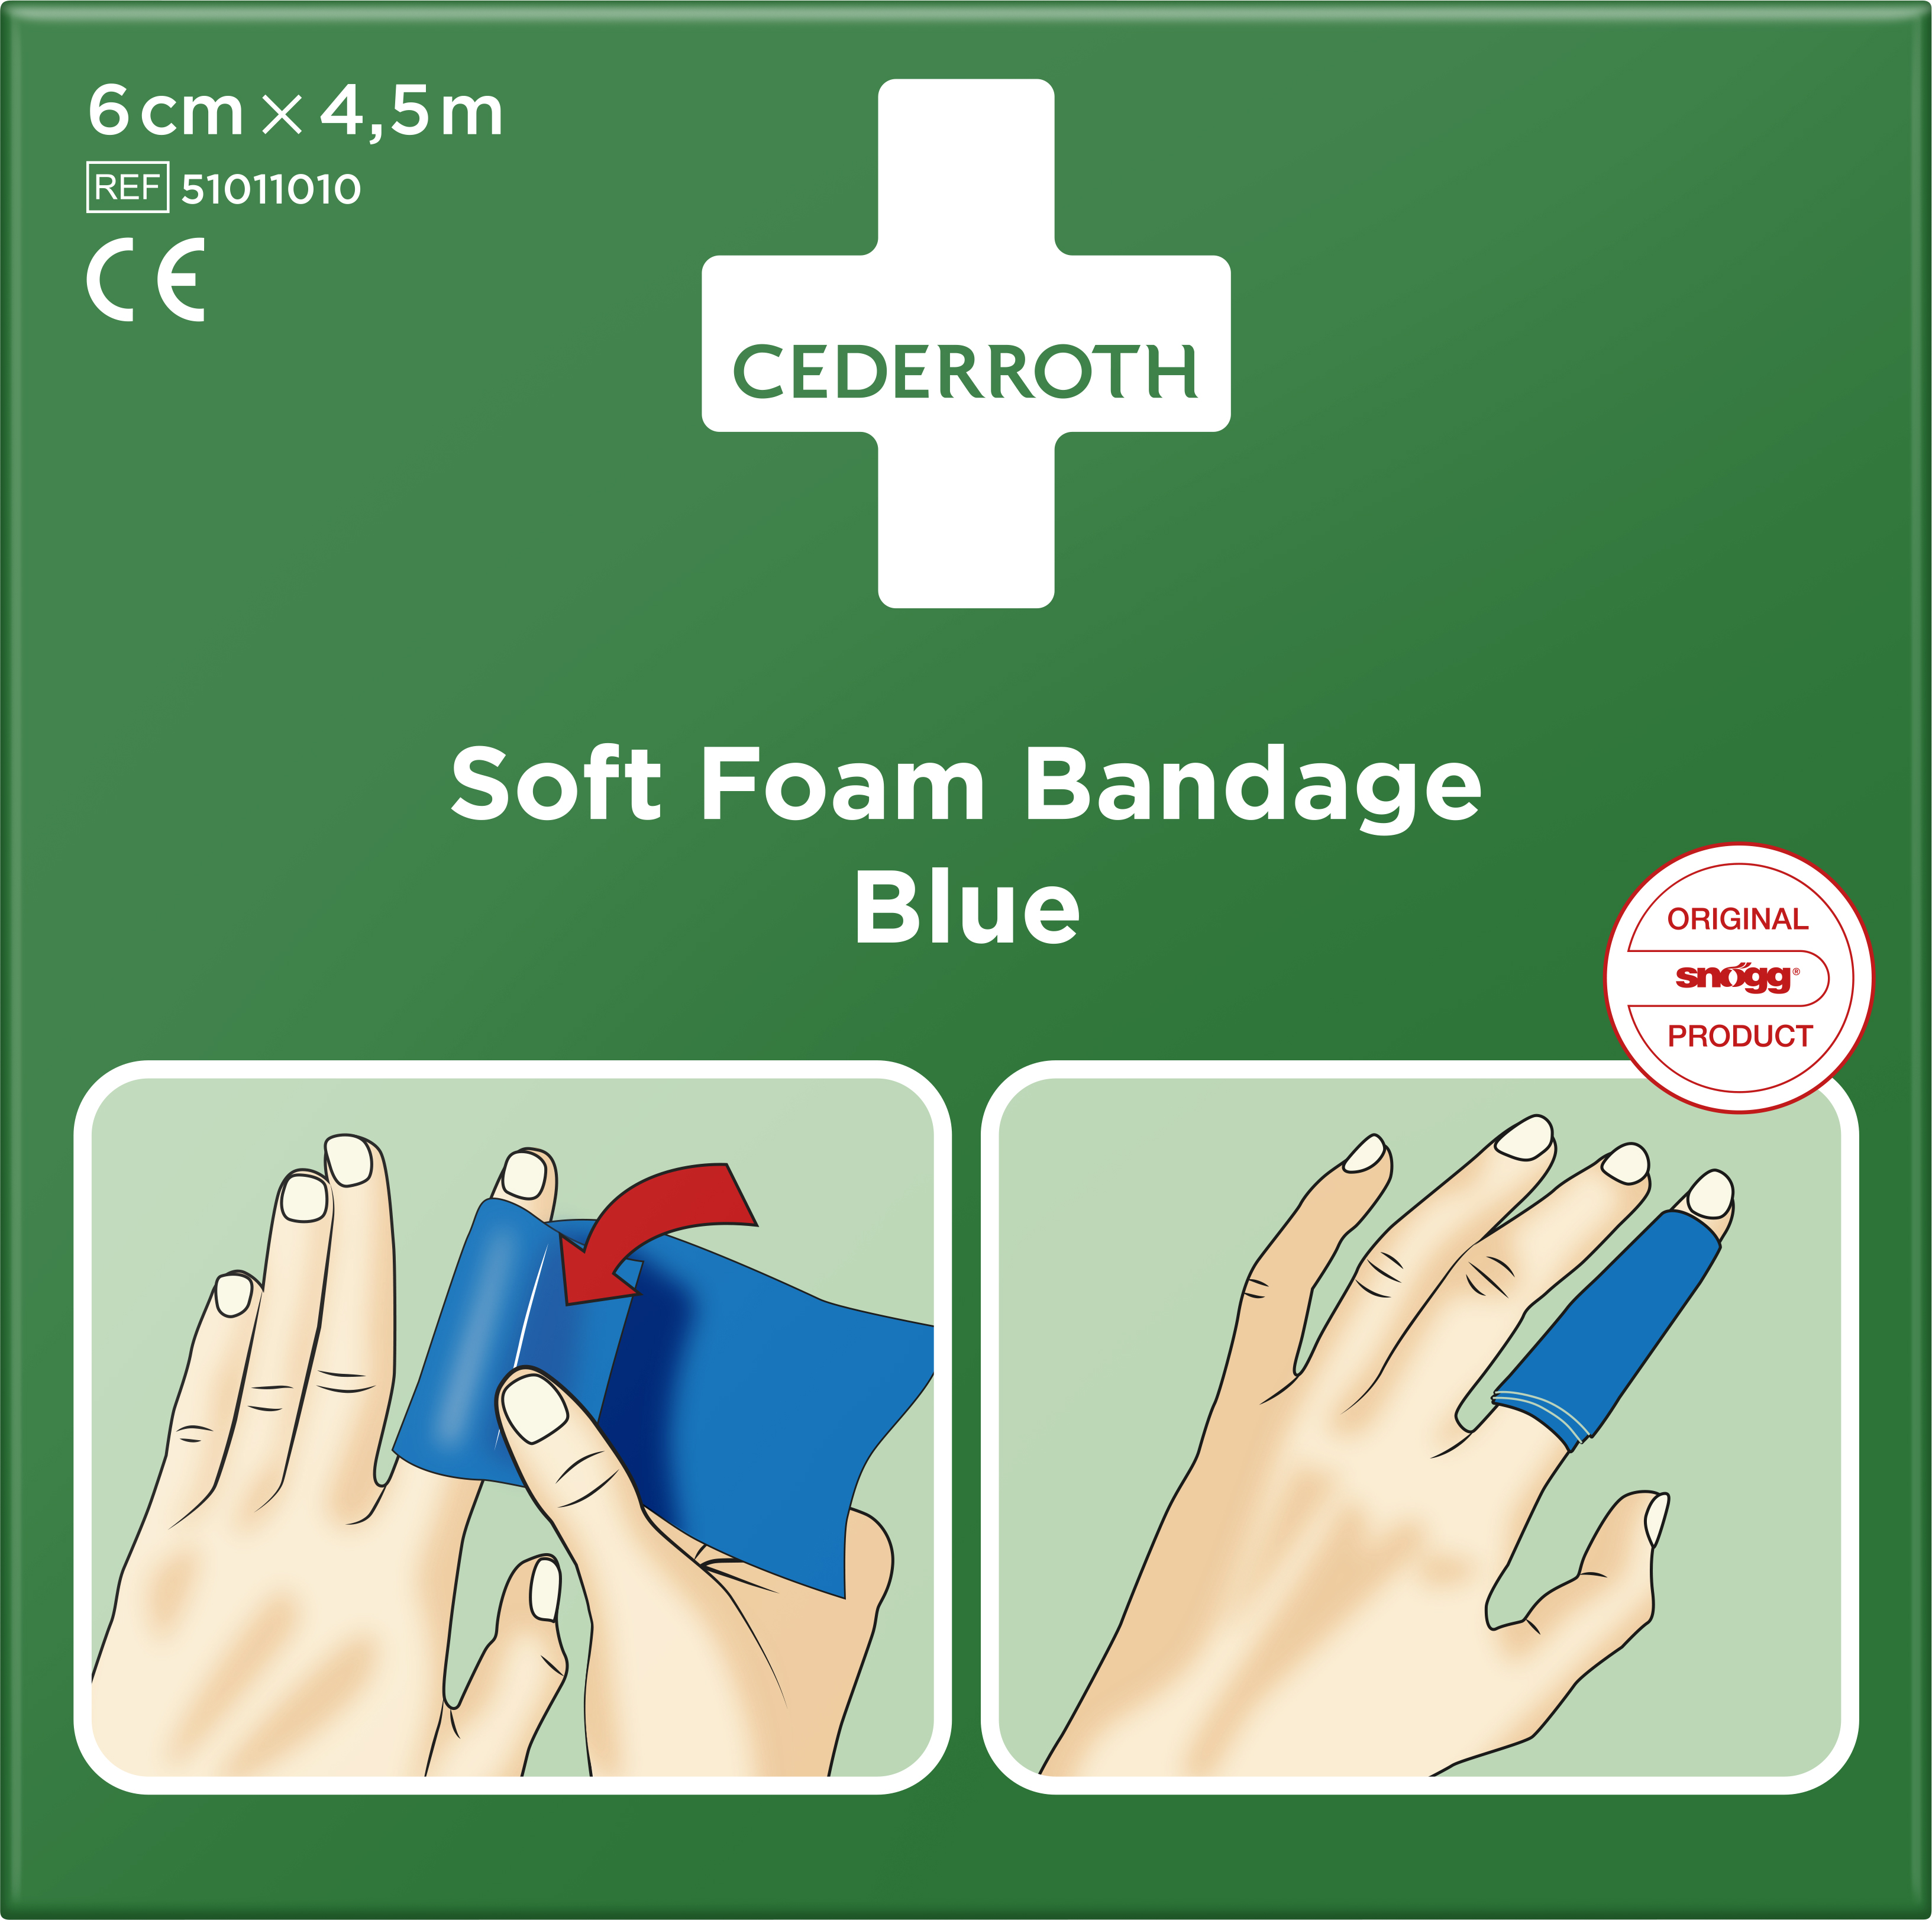 CEDERROTH Soft Foam Bandage Blue 6 cm x 4,5 m